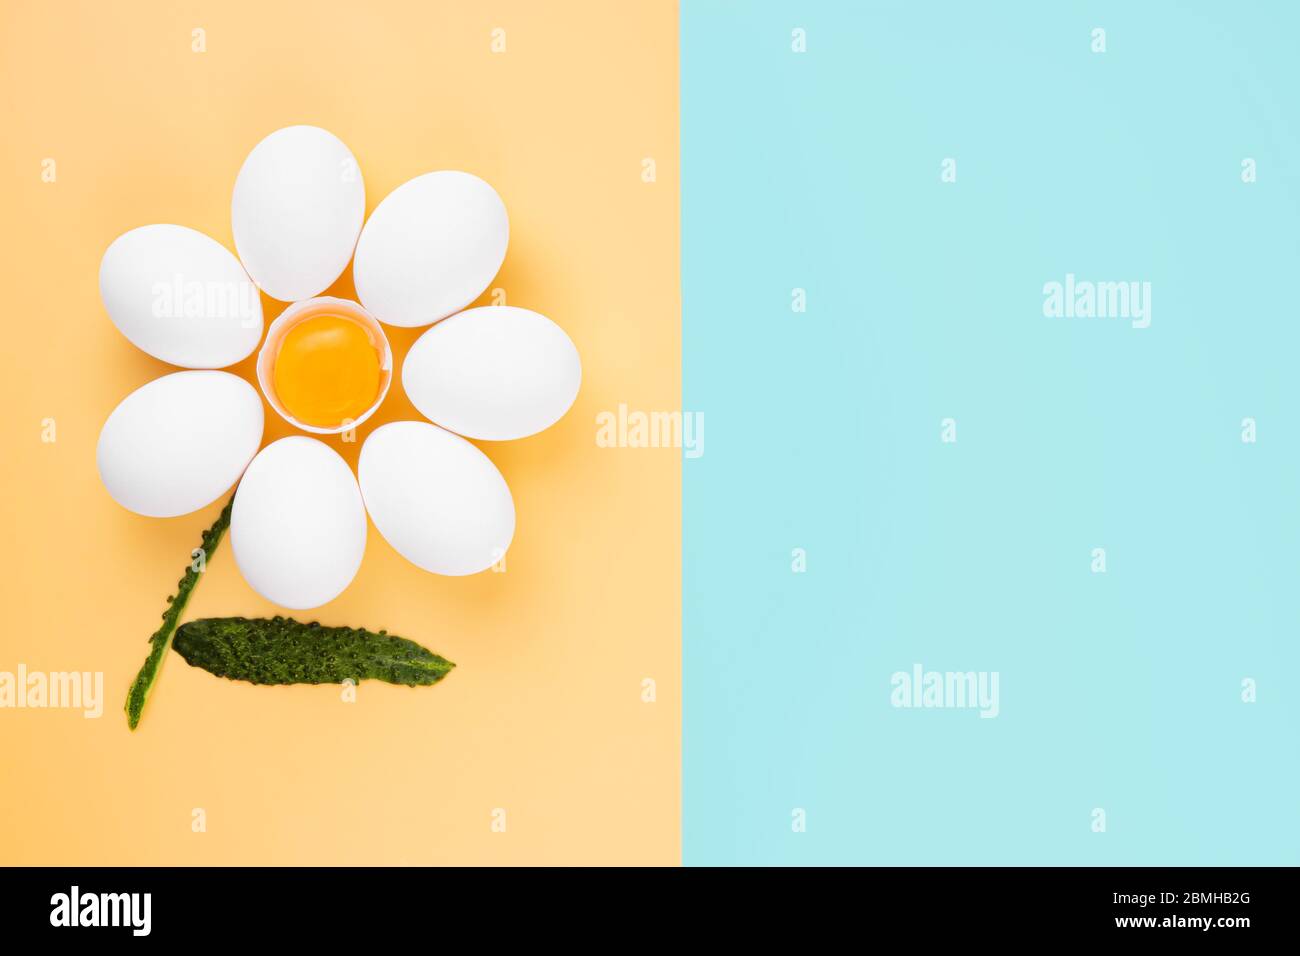 Weiße Hühnereier, die in einer Kamillenblütenform angeordnet sind, mit einer Eierschale in der Mitte mit Eigelb und Gurkenschälen als Stiel Stockfoto